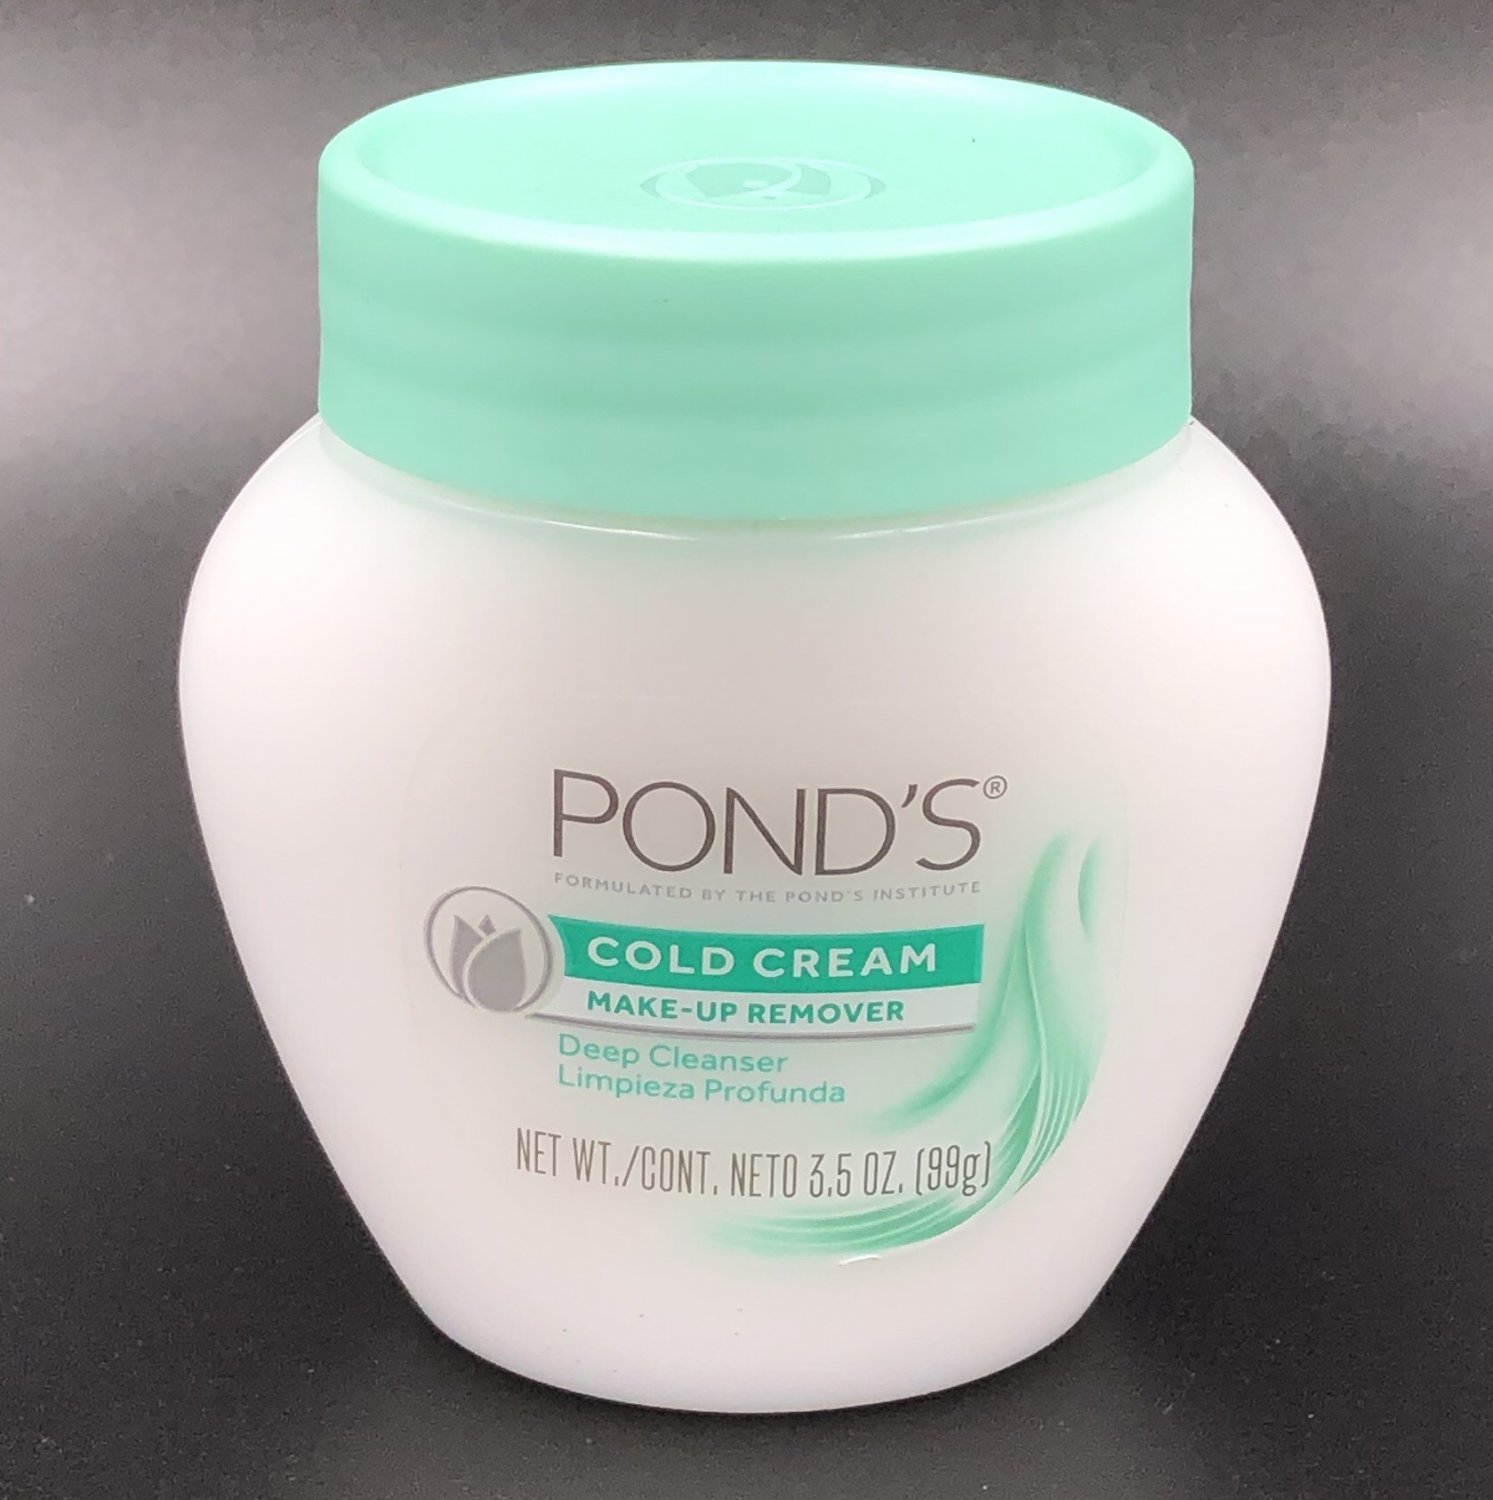 Pond’s Cold Cream Makeup Remover 3.5 oz PONDS